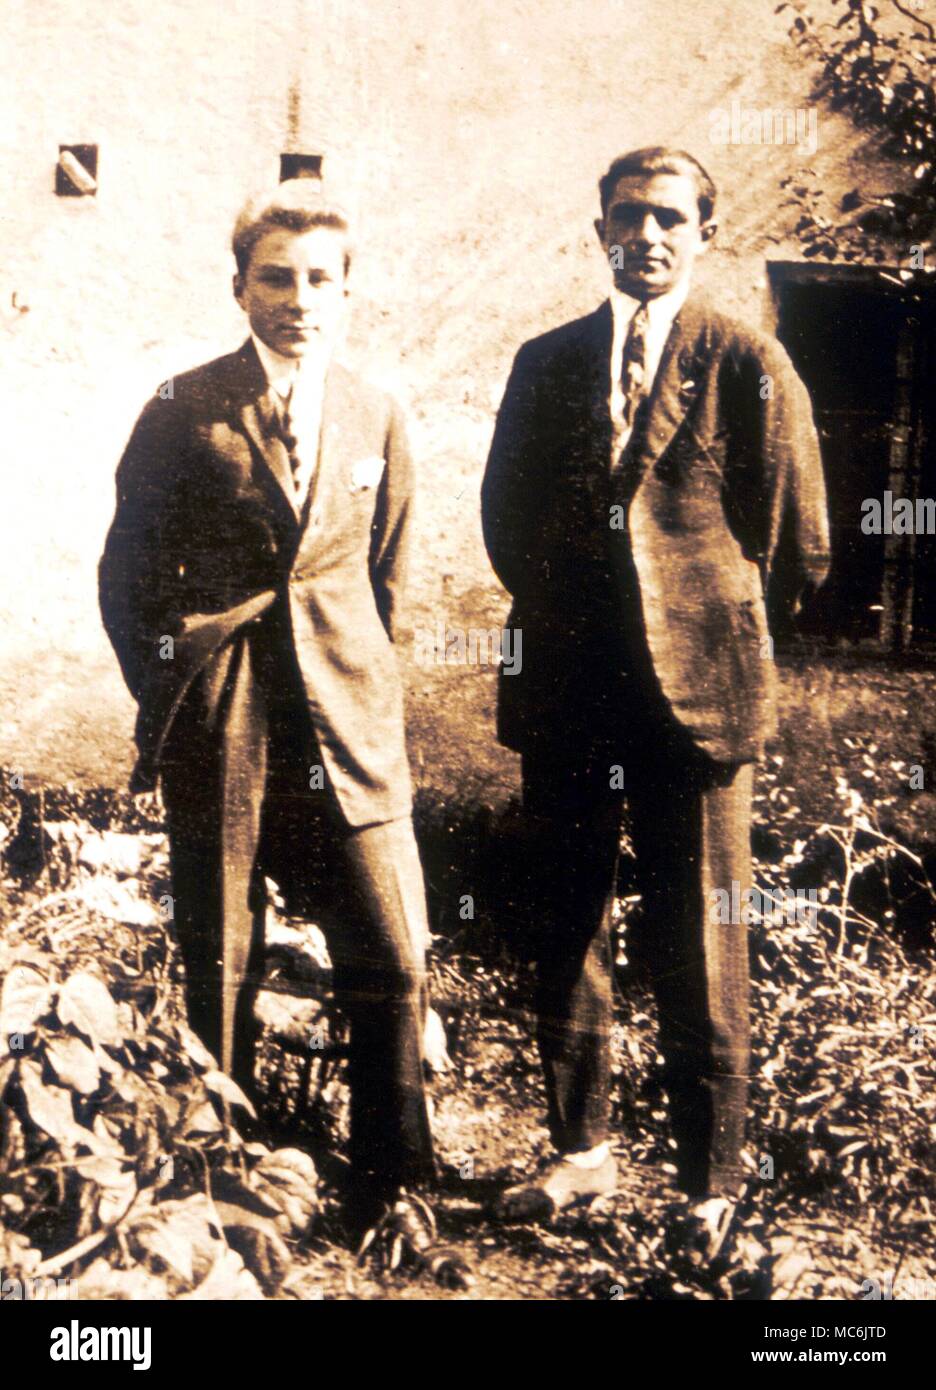 Los ocultistas - los famosos mediums Rudi Schneider (1908-1957) y su hermano Willi Foto de stock